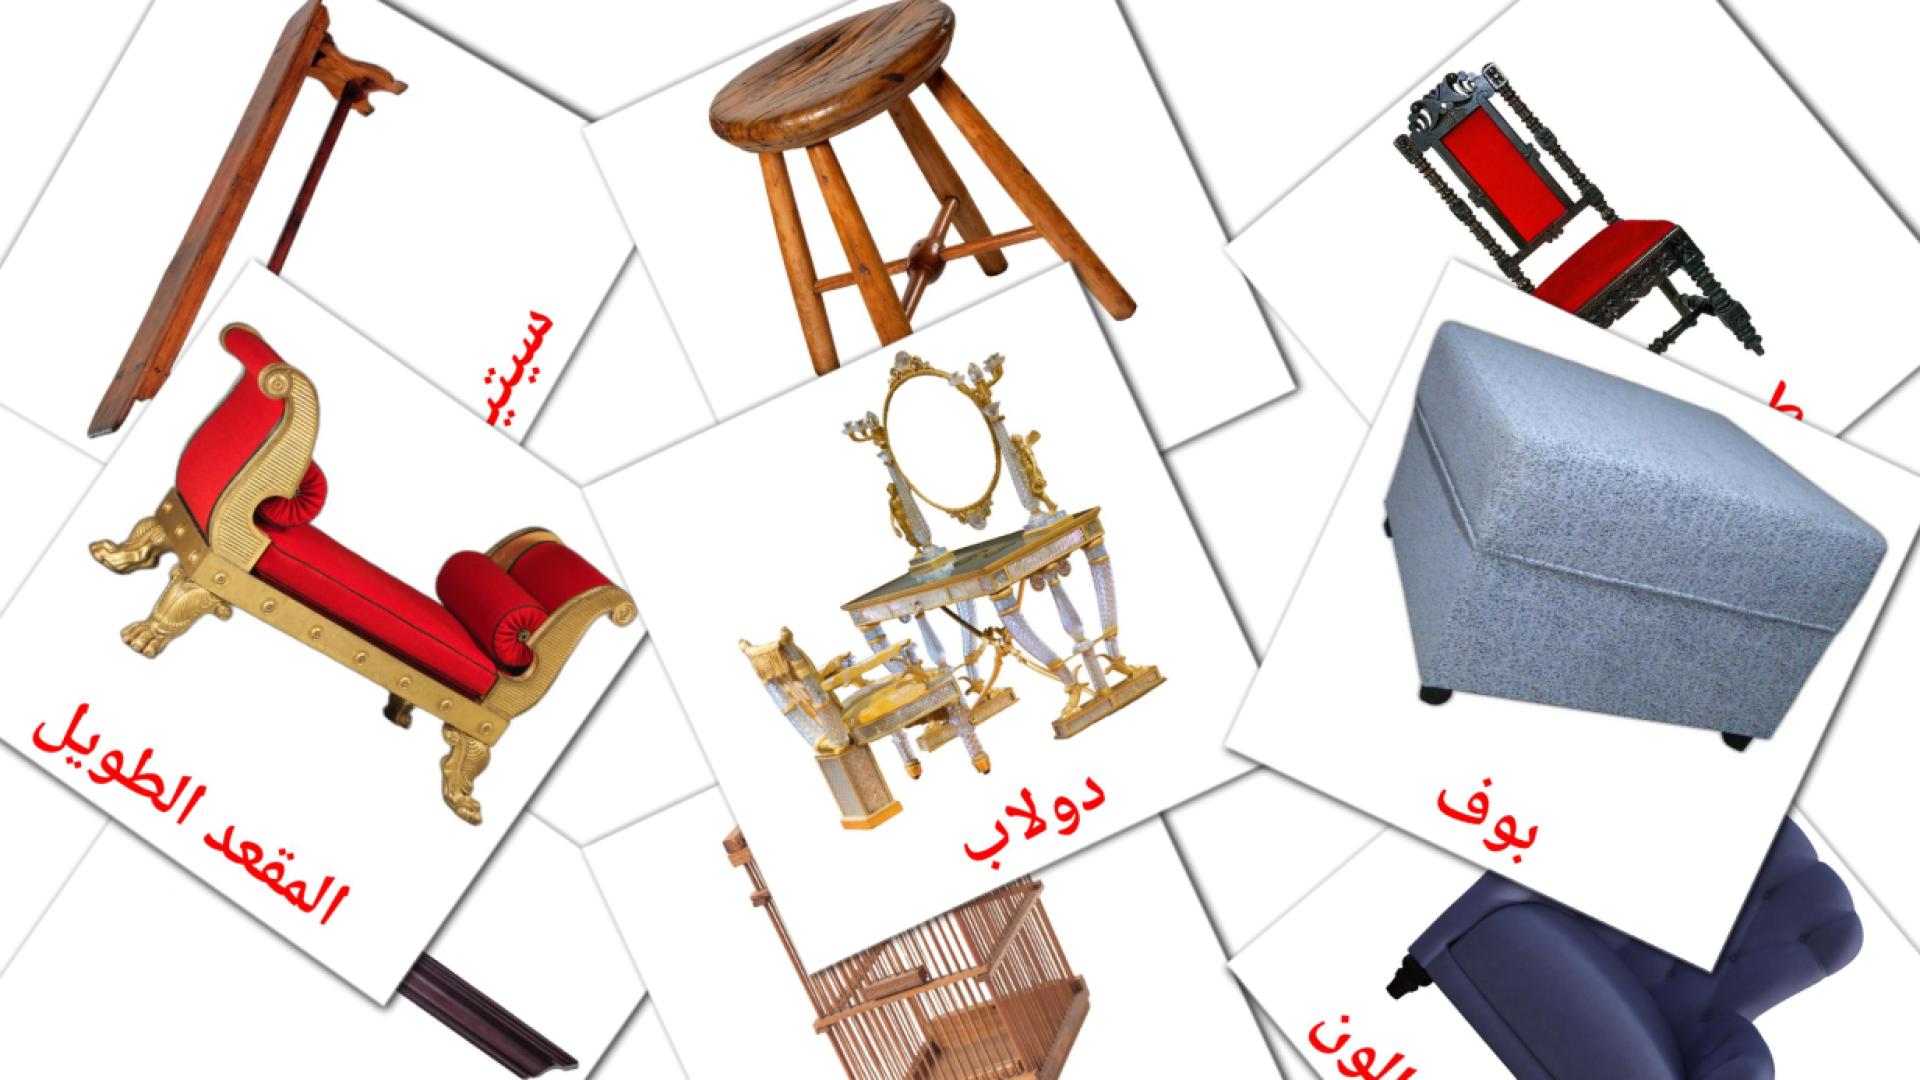 Möbel - Arabisch Vokabelkarten